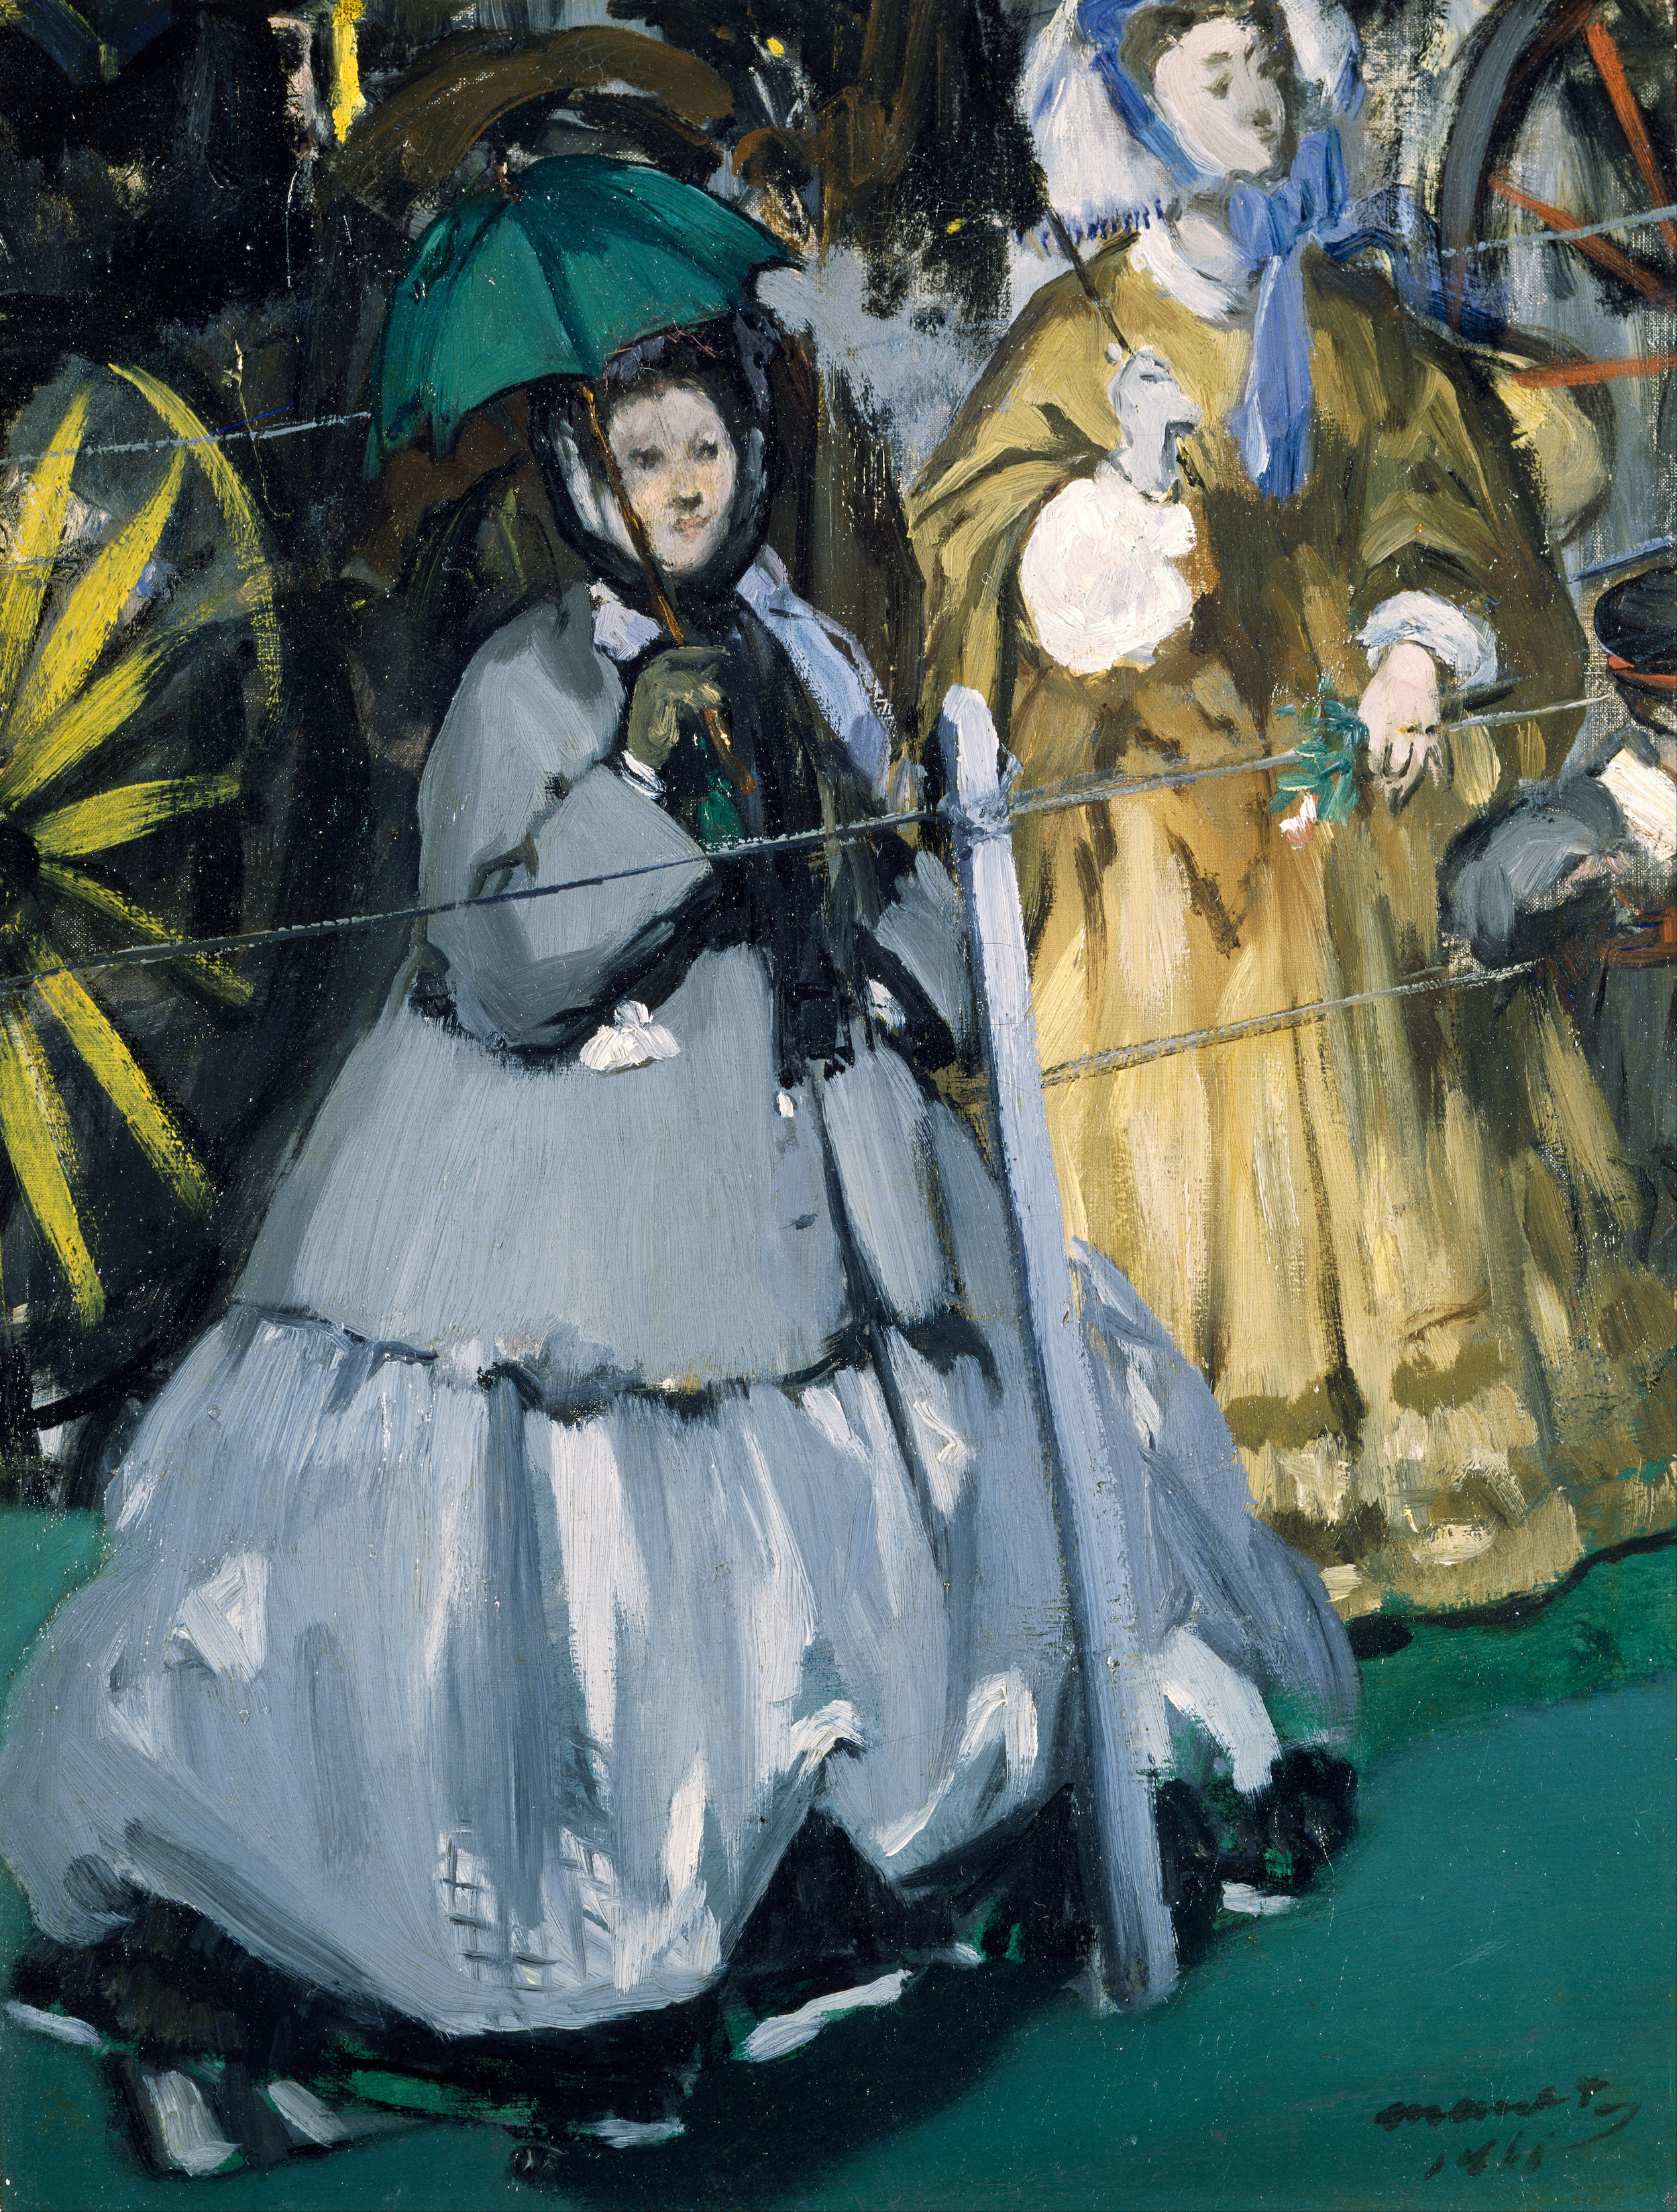 競馬場の婦人達 by Édouard Manet - 1866年 - 42.2 x 32.1 cm 